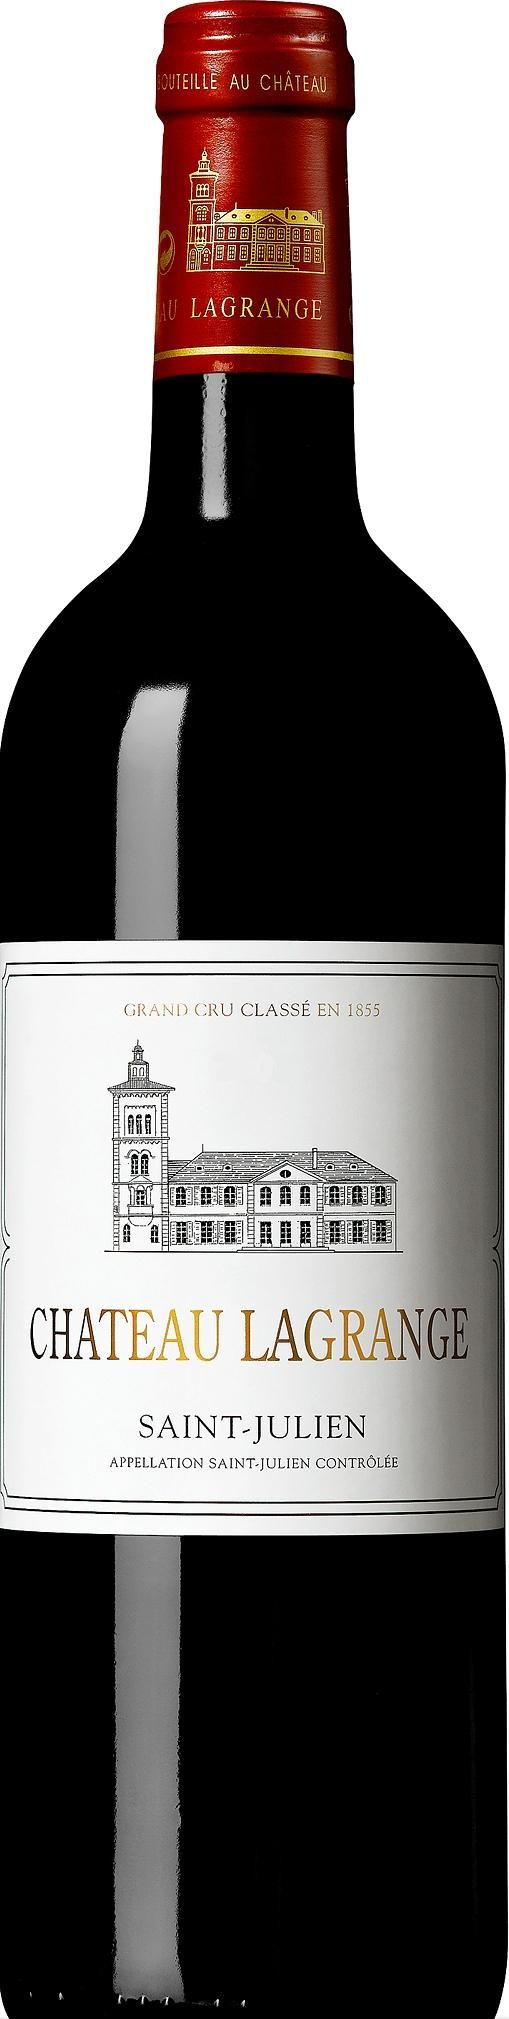 Chateau Lagrange, Grand Cru Classe, 2009